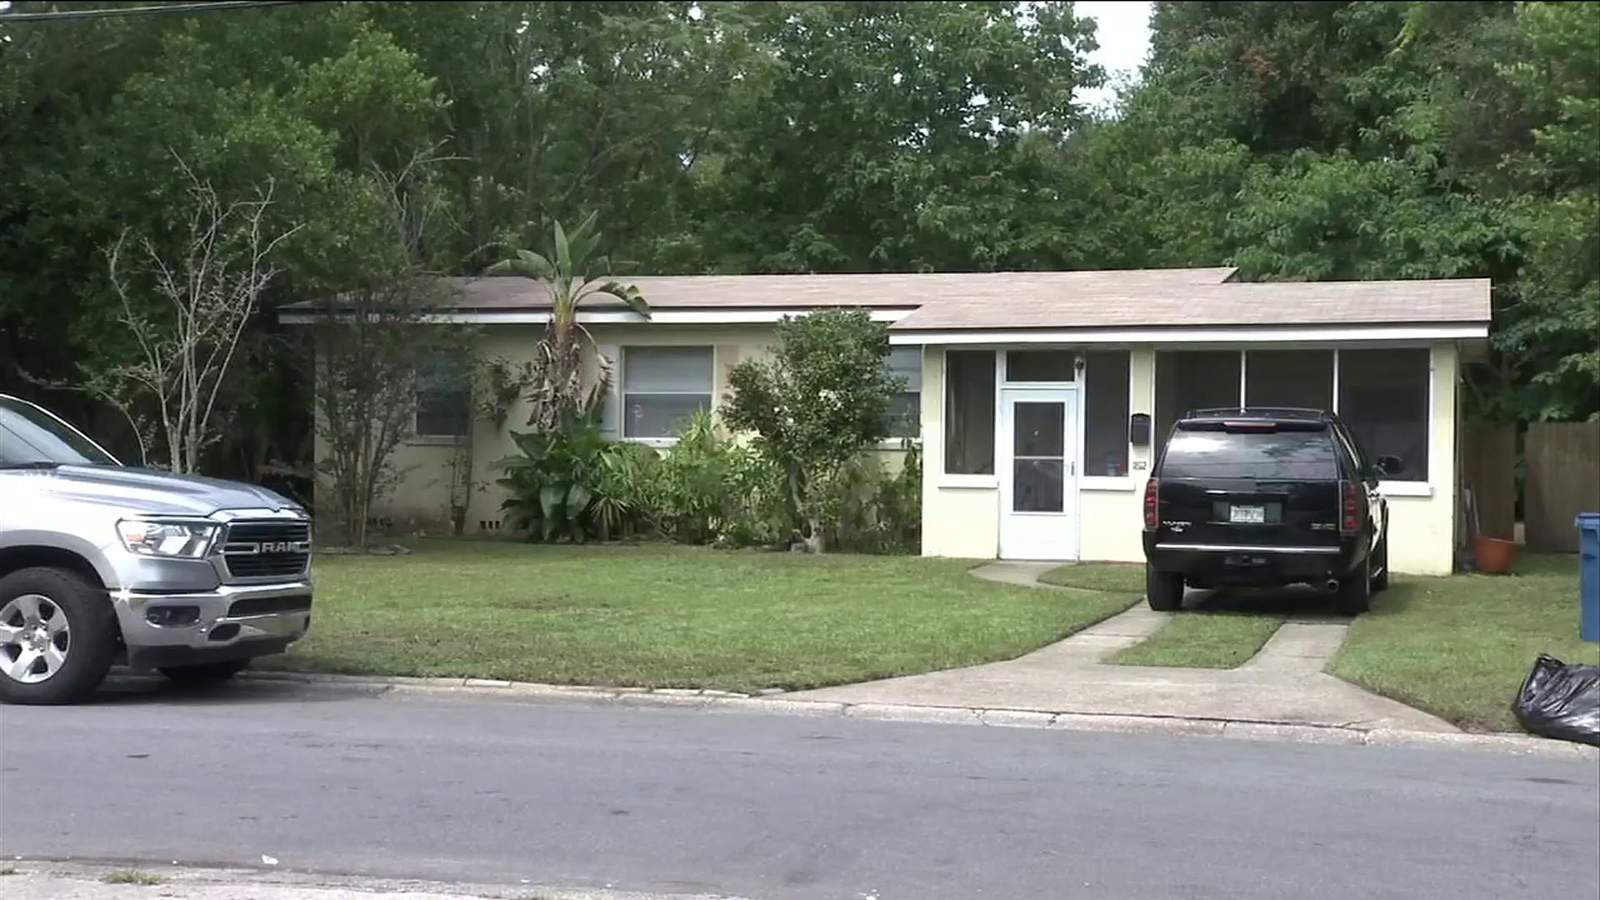 Quiet Arlington neighborhood shaken by stabbing death of young girl